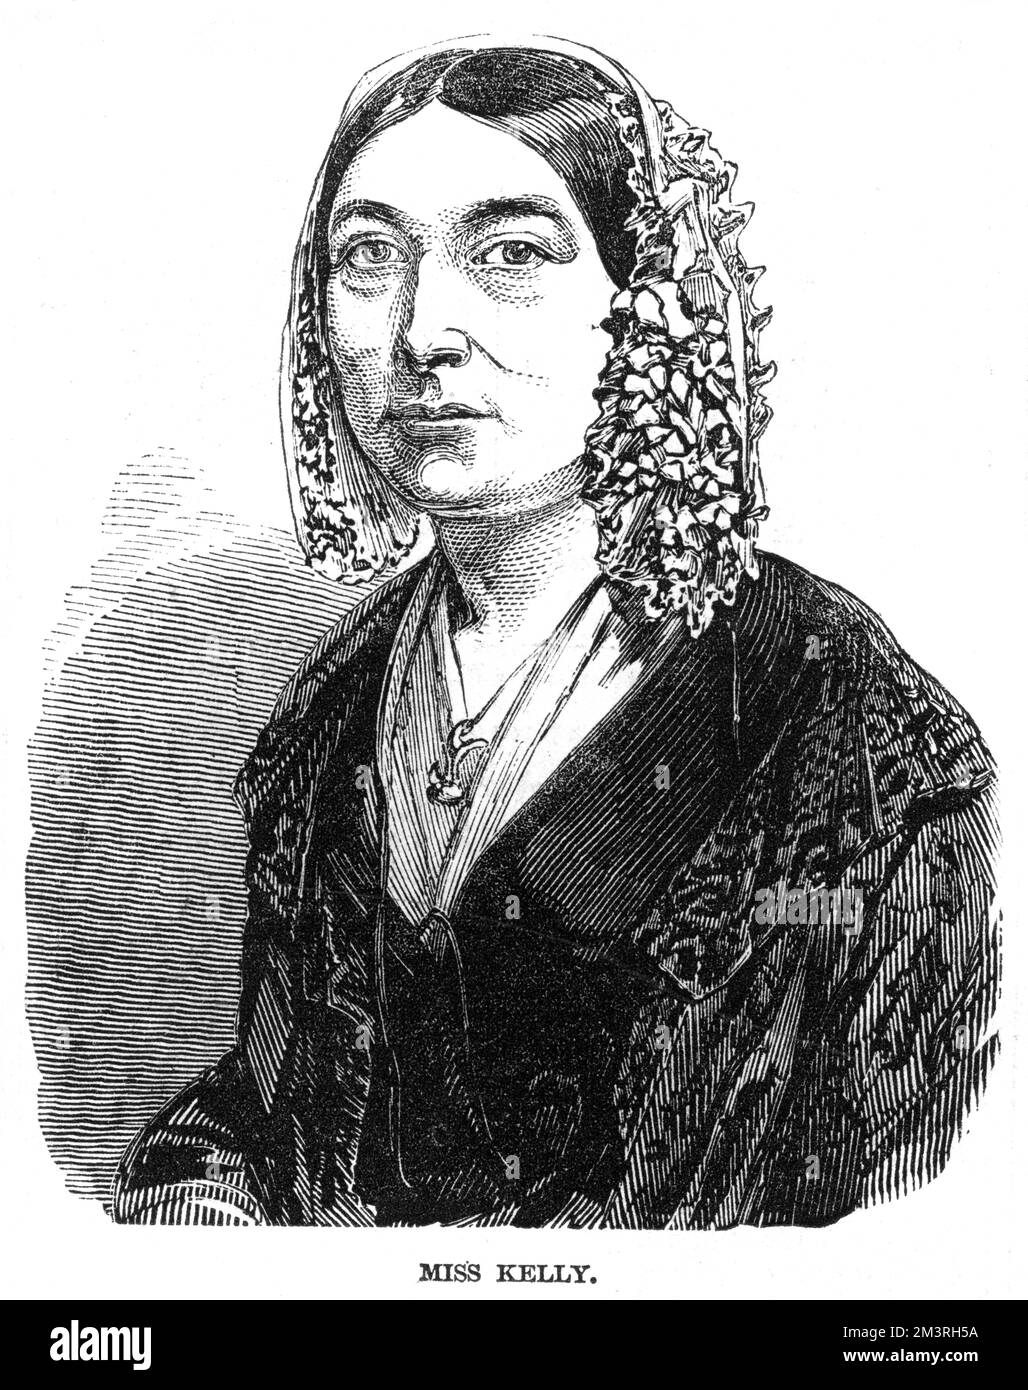 Frances „Fanny“ Kelly (1790-1882), eine immens talentierte und beliebte irische Schauspielerin, erschien vor allem 36 Jahre lang in der Drury Lane mit unvermindertem Ruhm, bekannt für Comedy-Rollen. Datum: 1846 Stockfoto